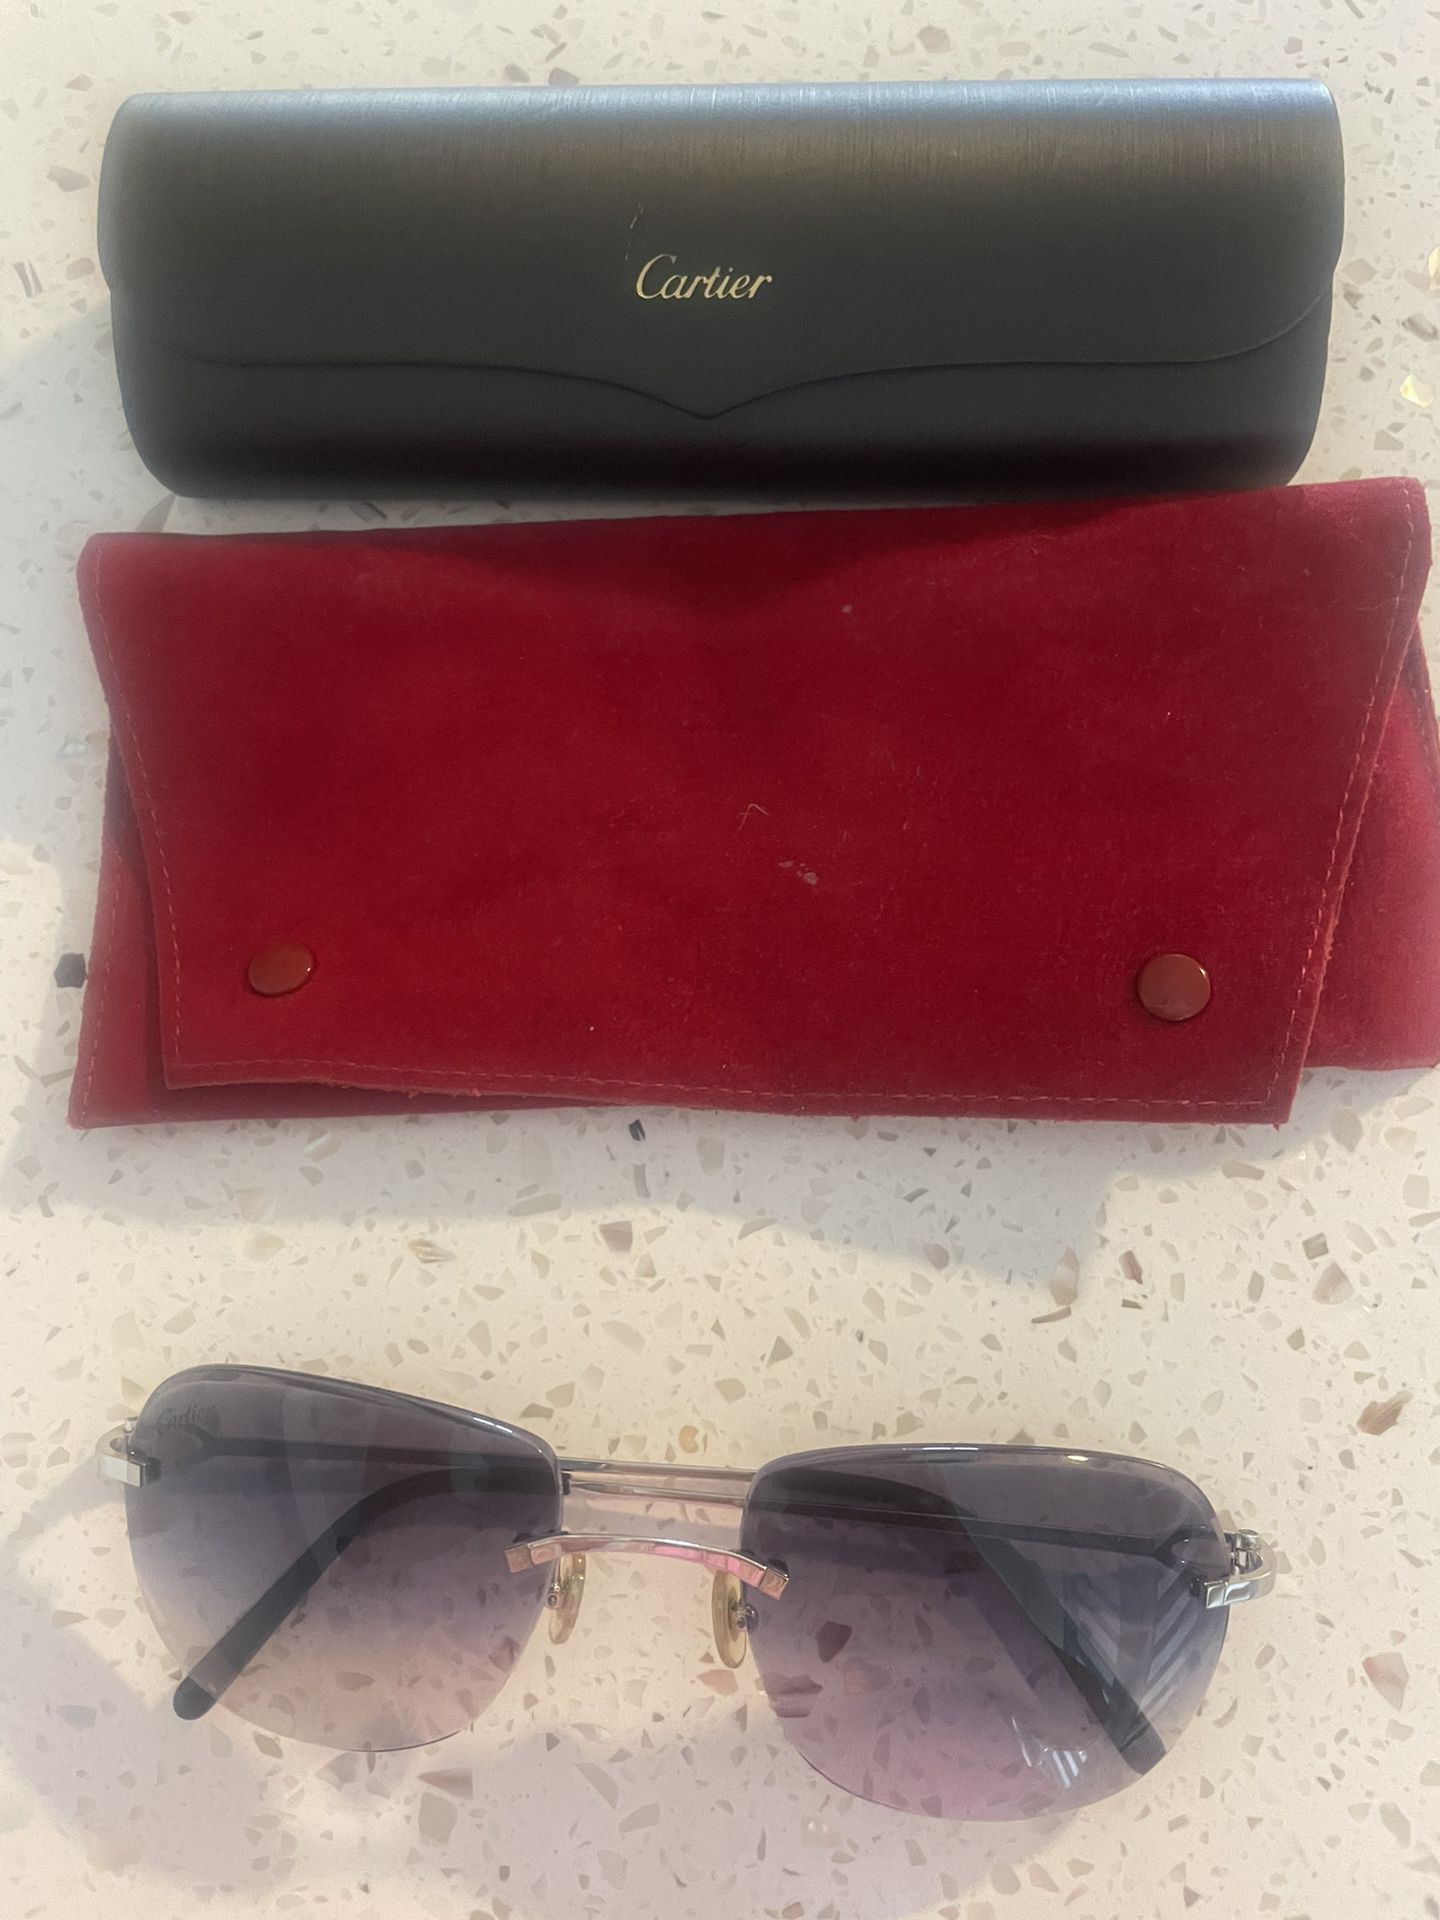 $99 Cartier, Sunglasses Case, Soft Case Blue, Silver Lenses, Luxury, Male, Female Woman, Man Unisex